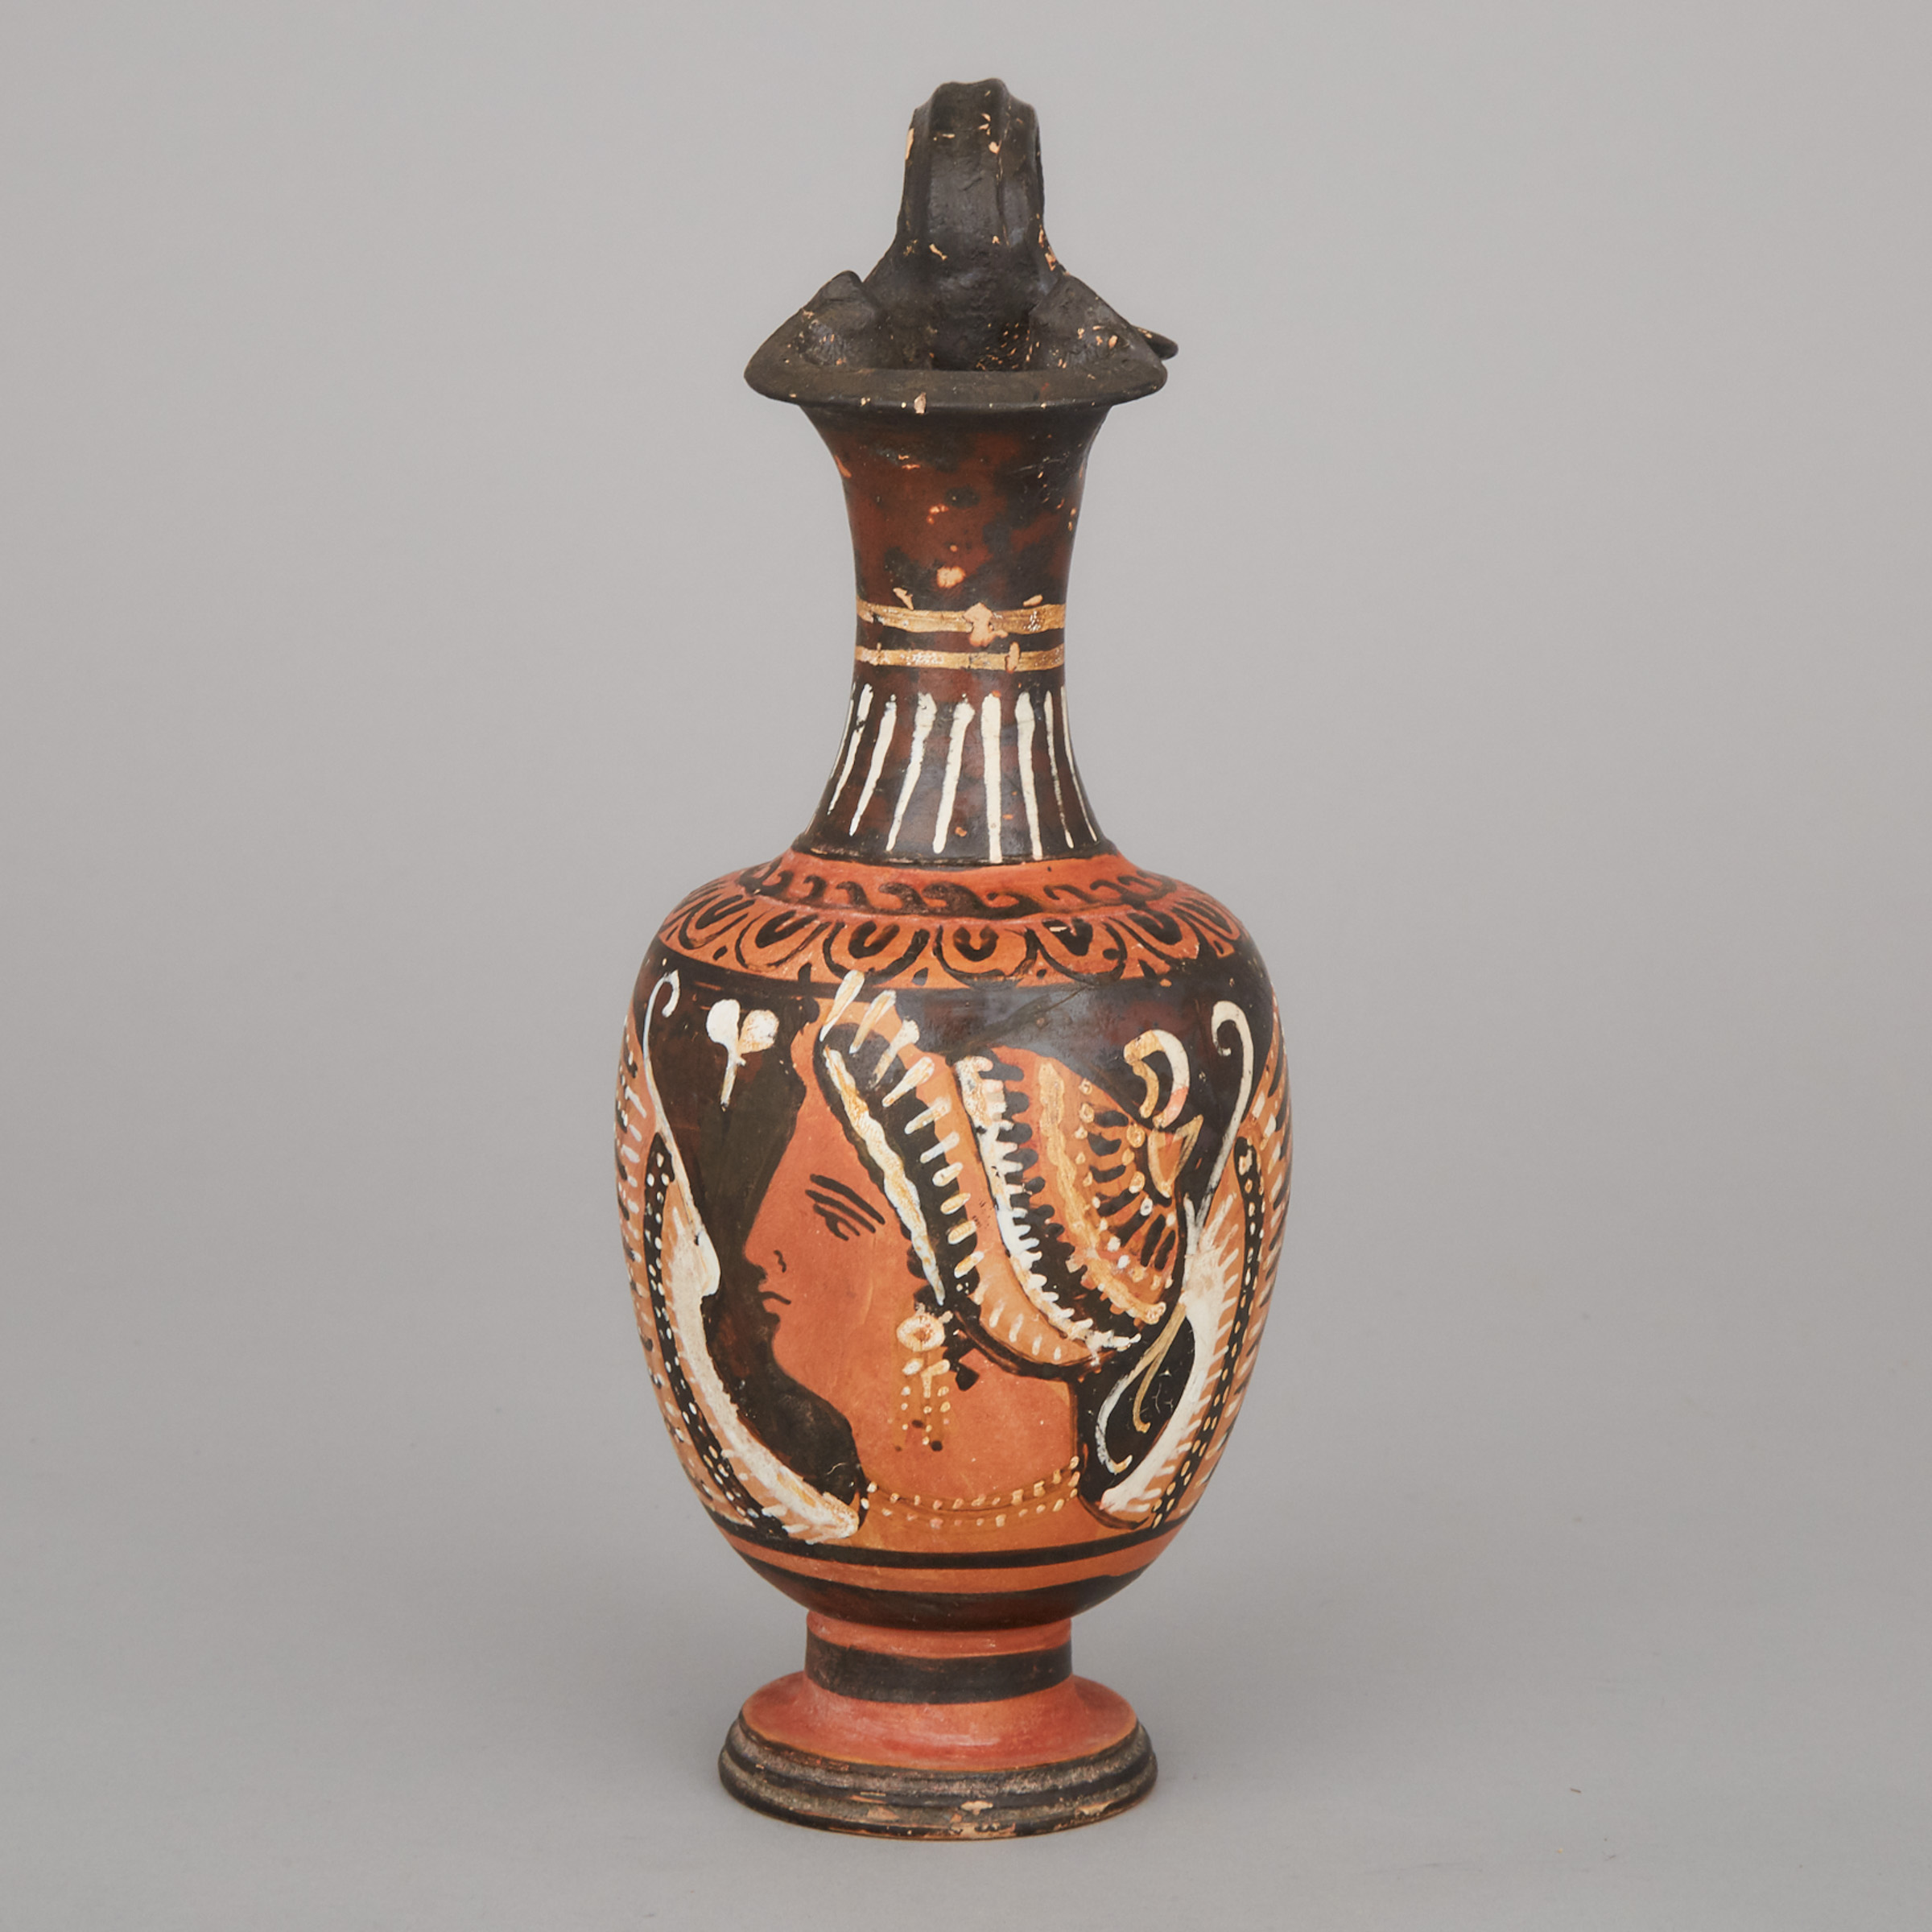 Apulian Red Figure Pottery Oinochoe, 4th century B.C.